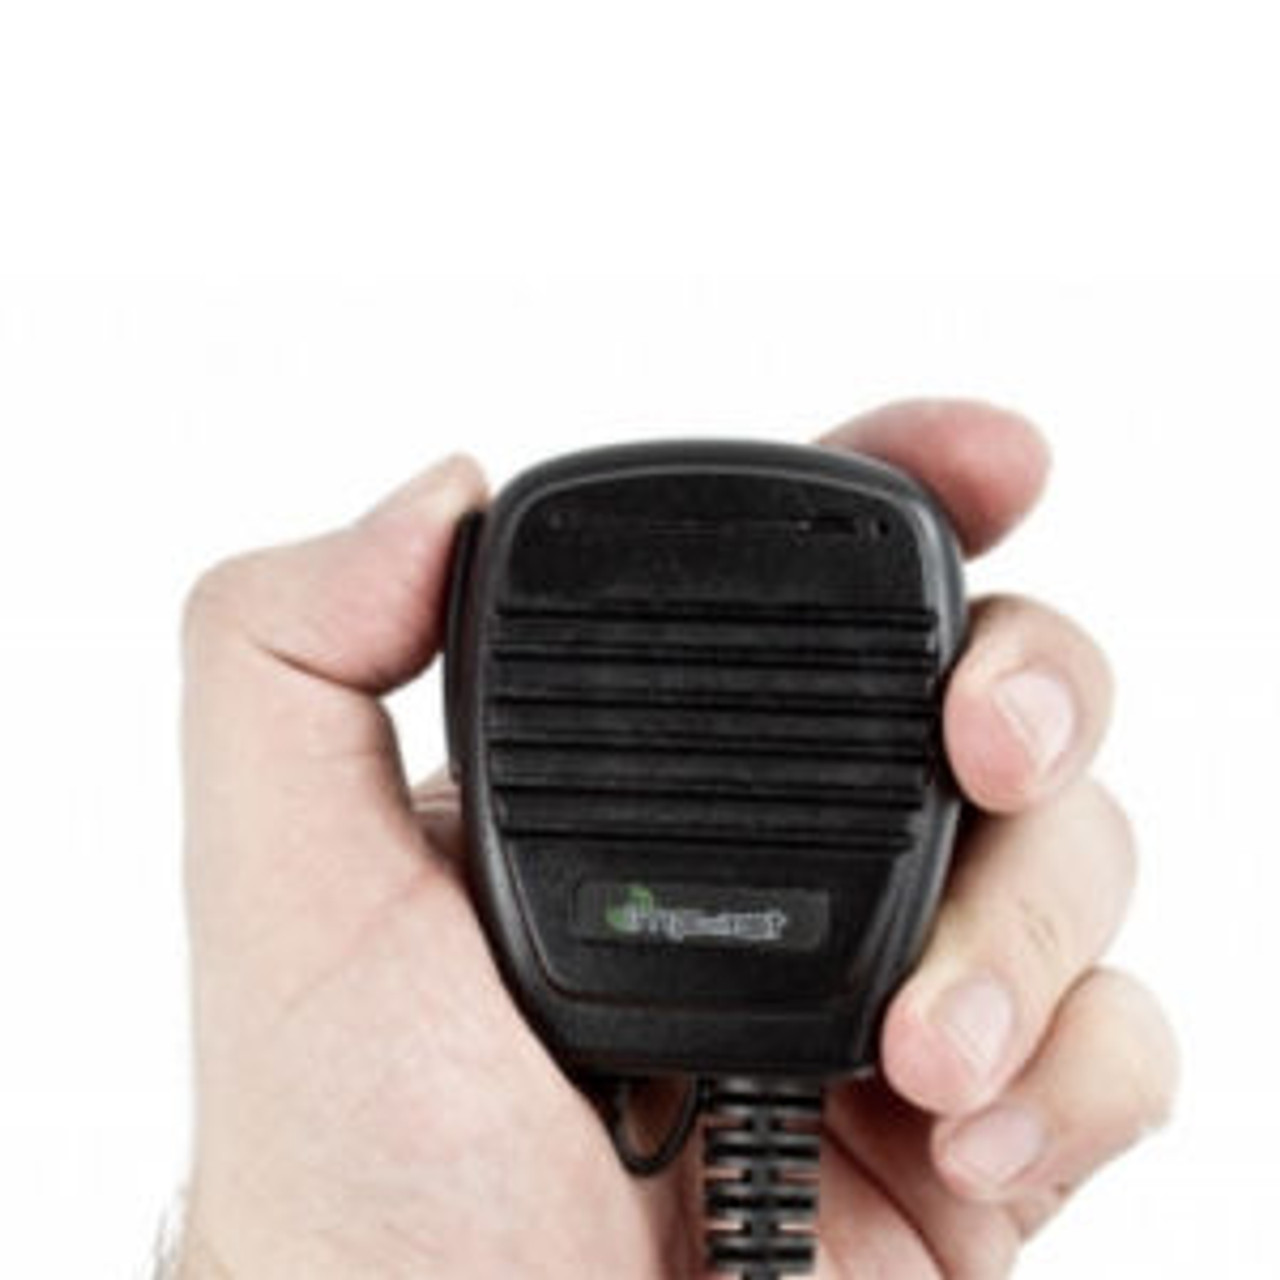 Kenwood NX-5400 Medium Duty Remote Speaker Mic